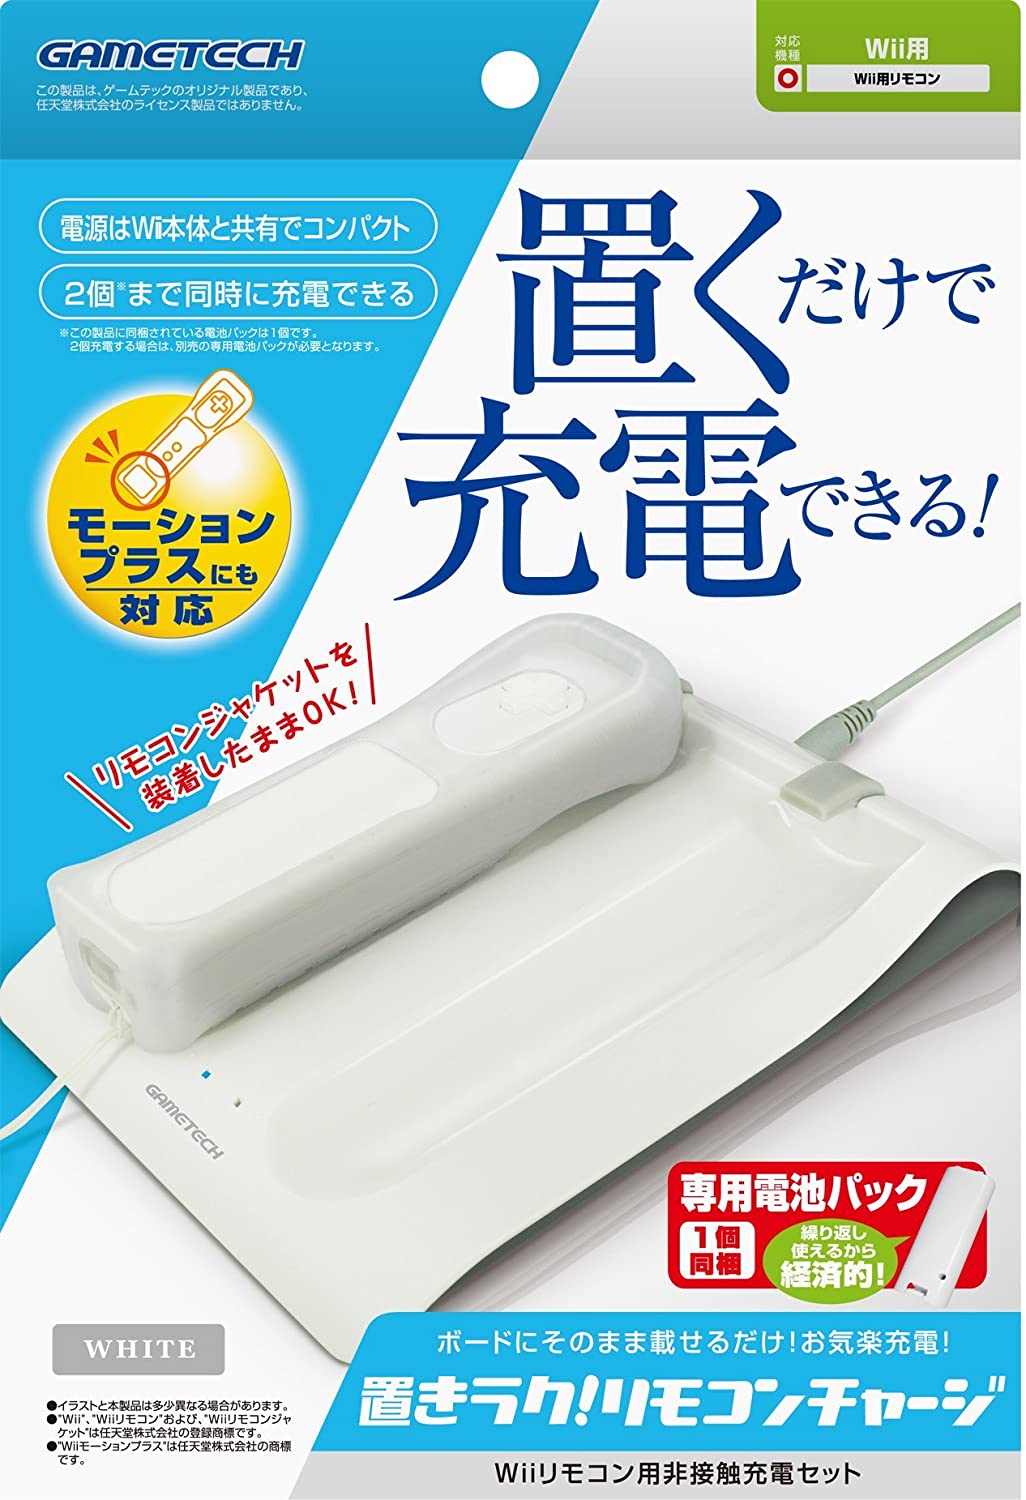 【訳あり】【送料無料】【中古】Wii Wiiリモコン用非接触充電セット『置きラク!リモコンチャージ (ホワイト) 』